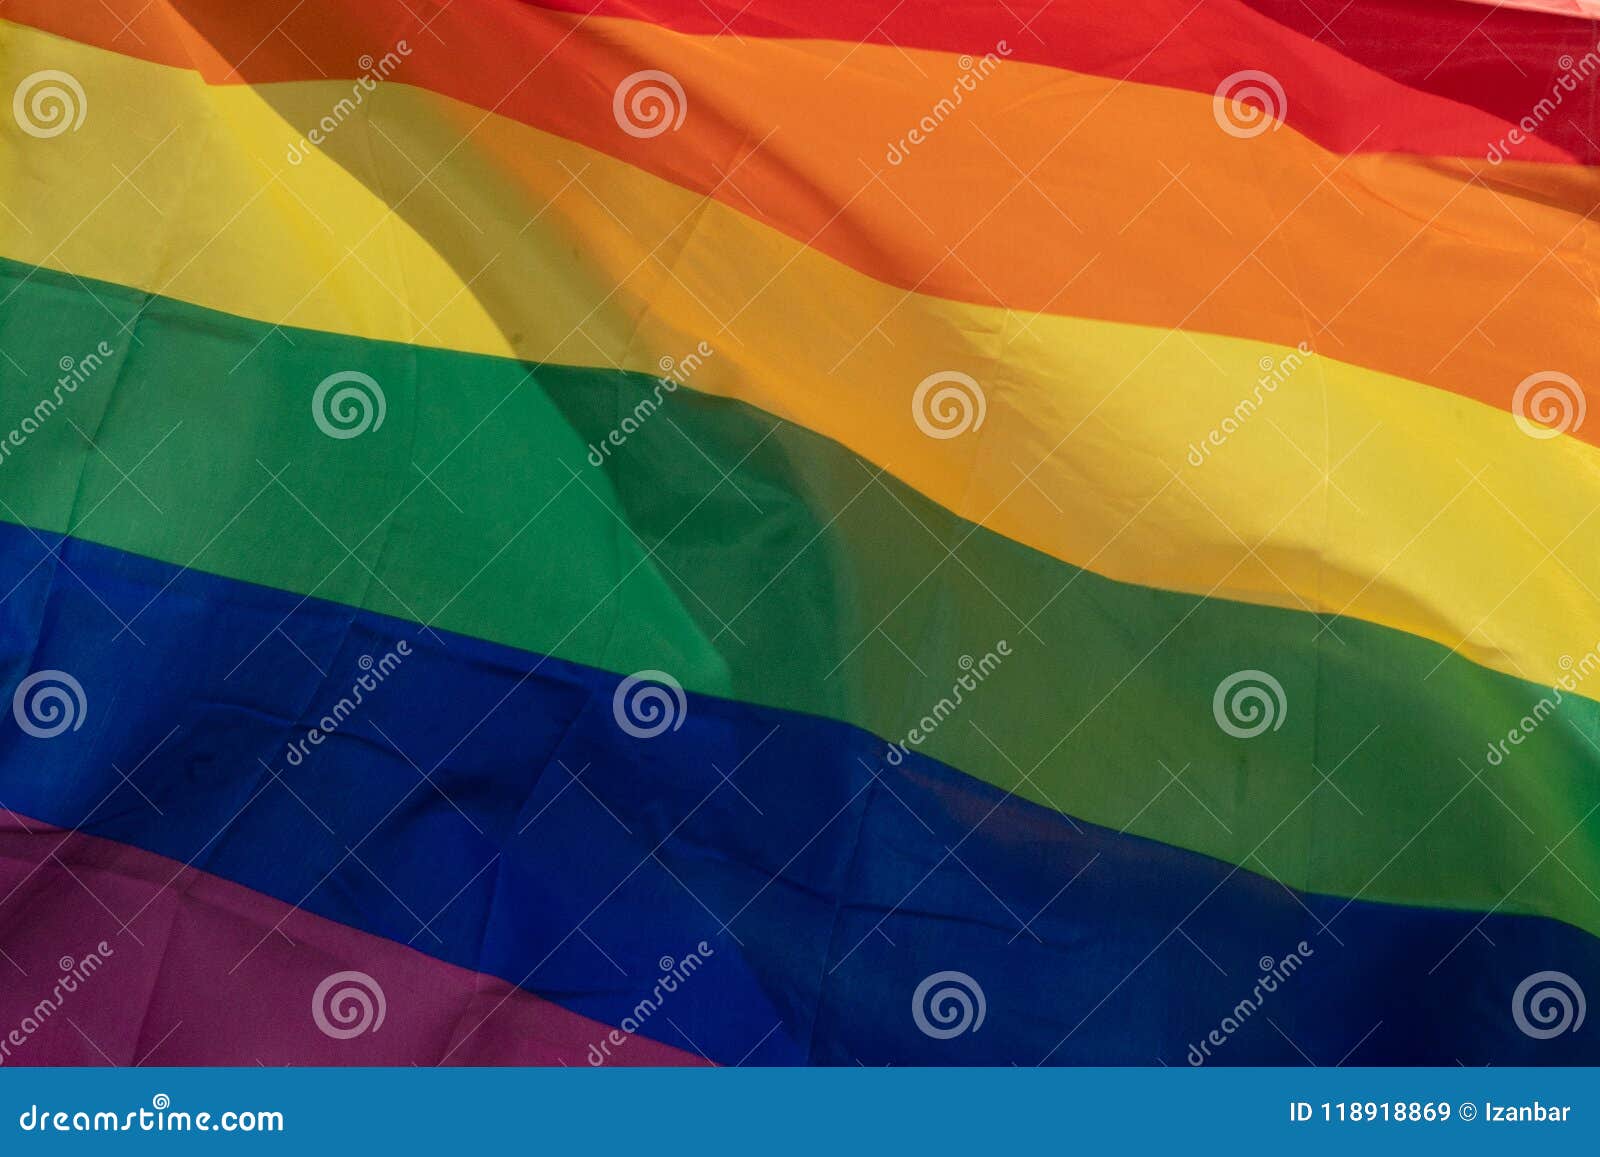 Bandera De La Paz Del Arco Iris Del Orgullo Gay Imagen De Archivo Imagen De Bandera Hombre